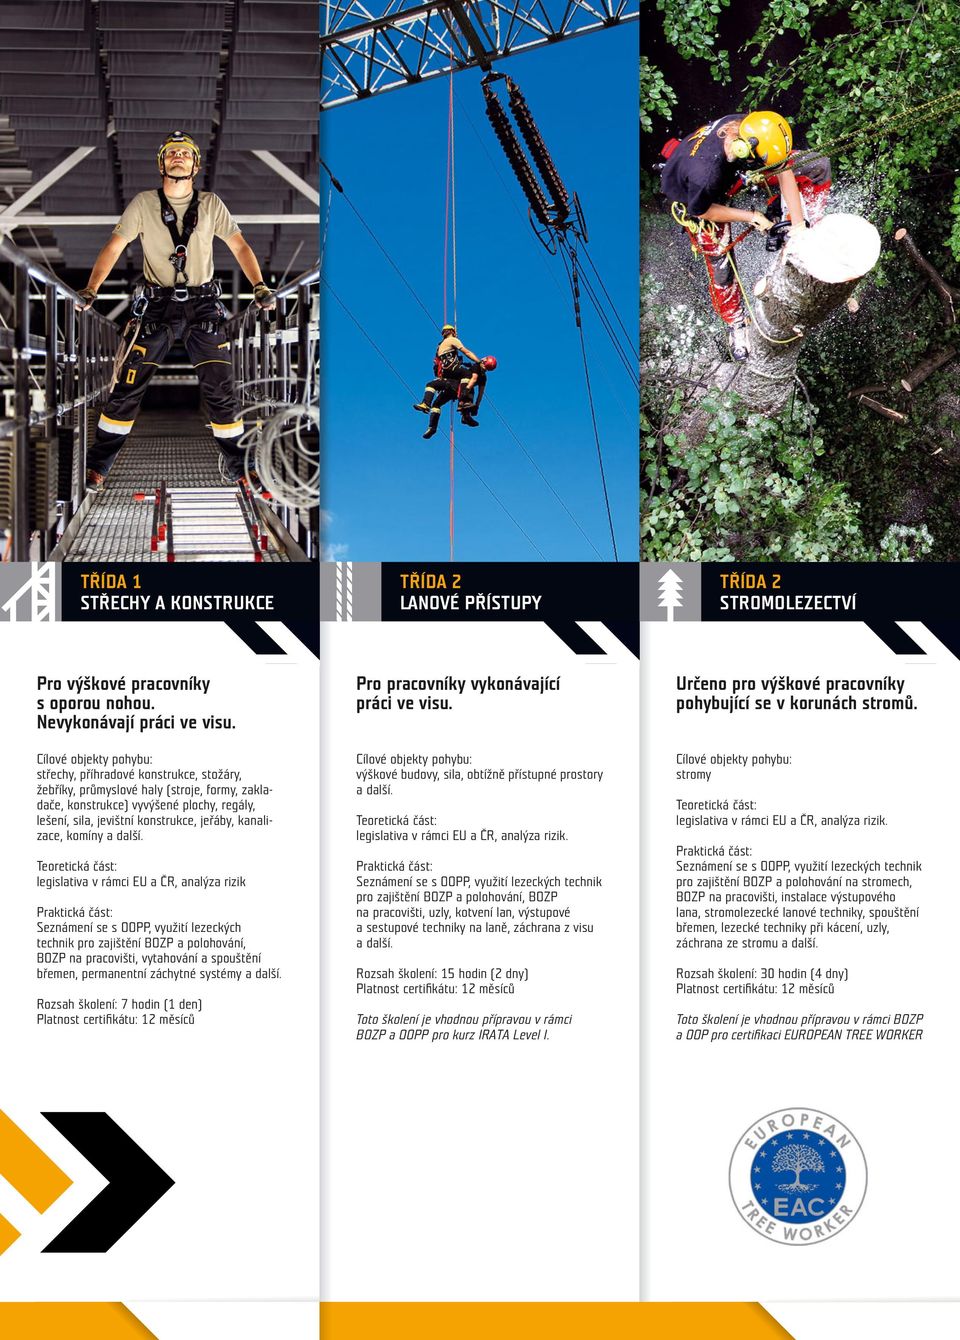 legislativa v rámci EU a ČR, analýza rizik Seznámení se s OOPP, využití lezeckých technik pro zajištění BOZP a polohování, BOZP na pracovišti, vytahování a spouštění břemen, permanentní záchytné